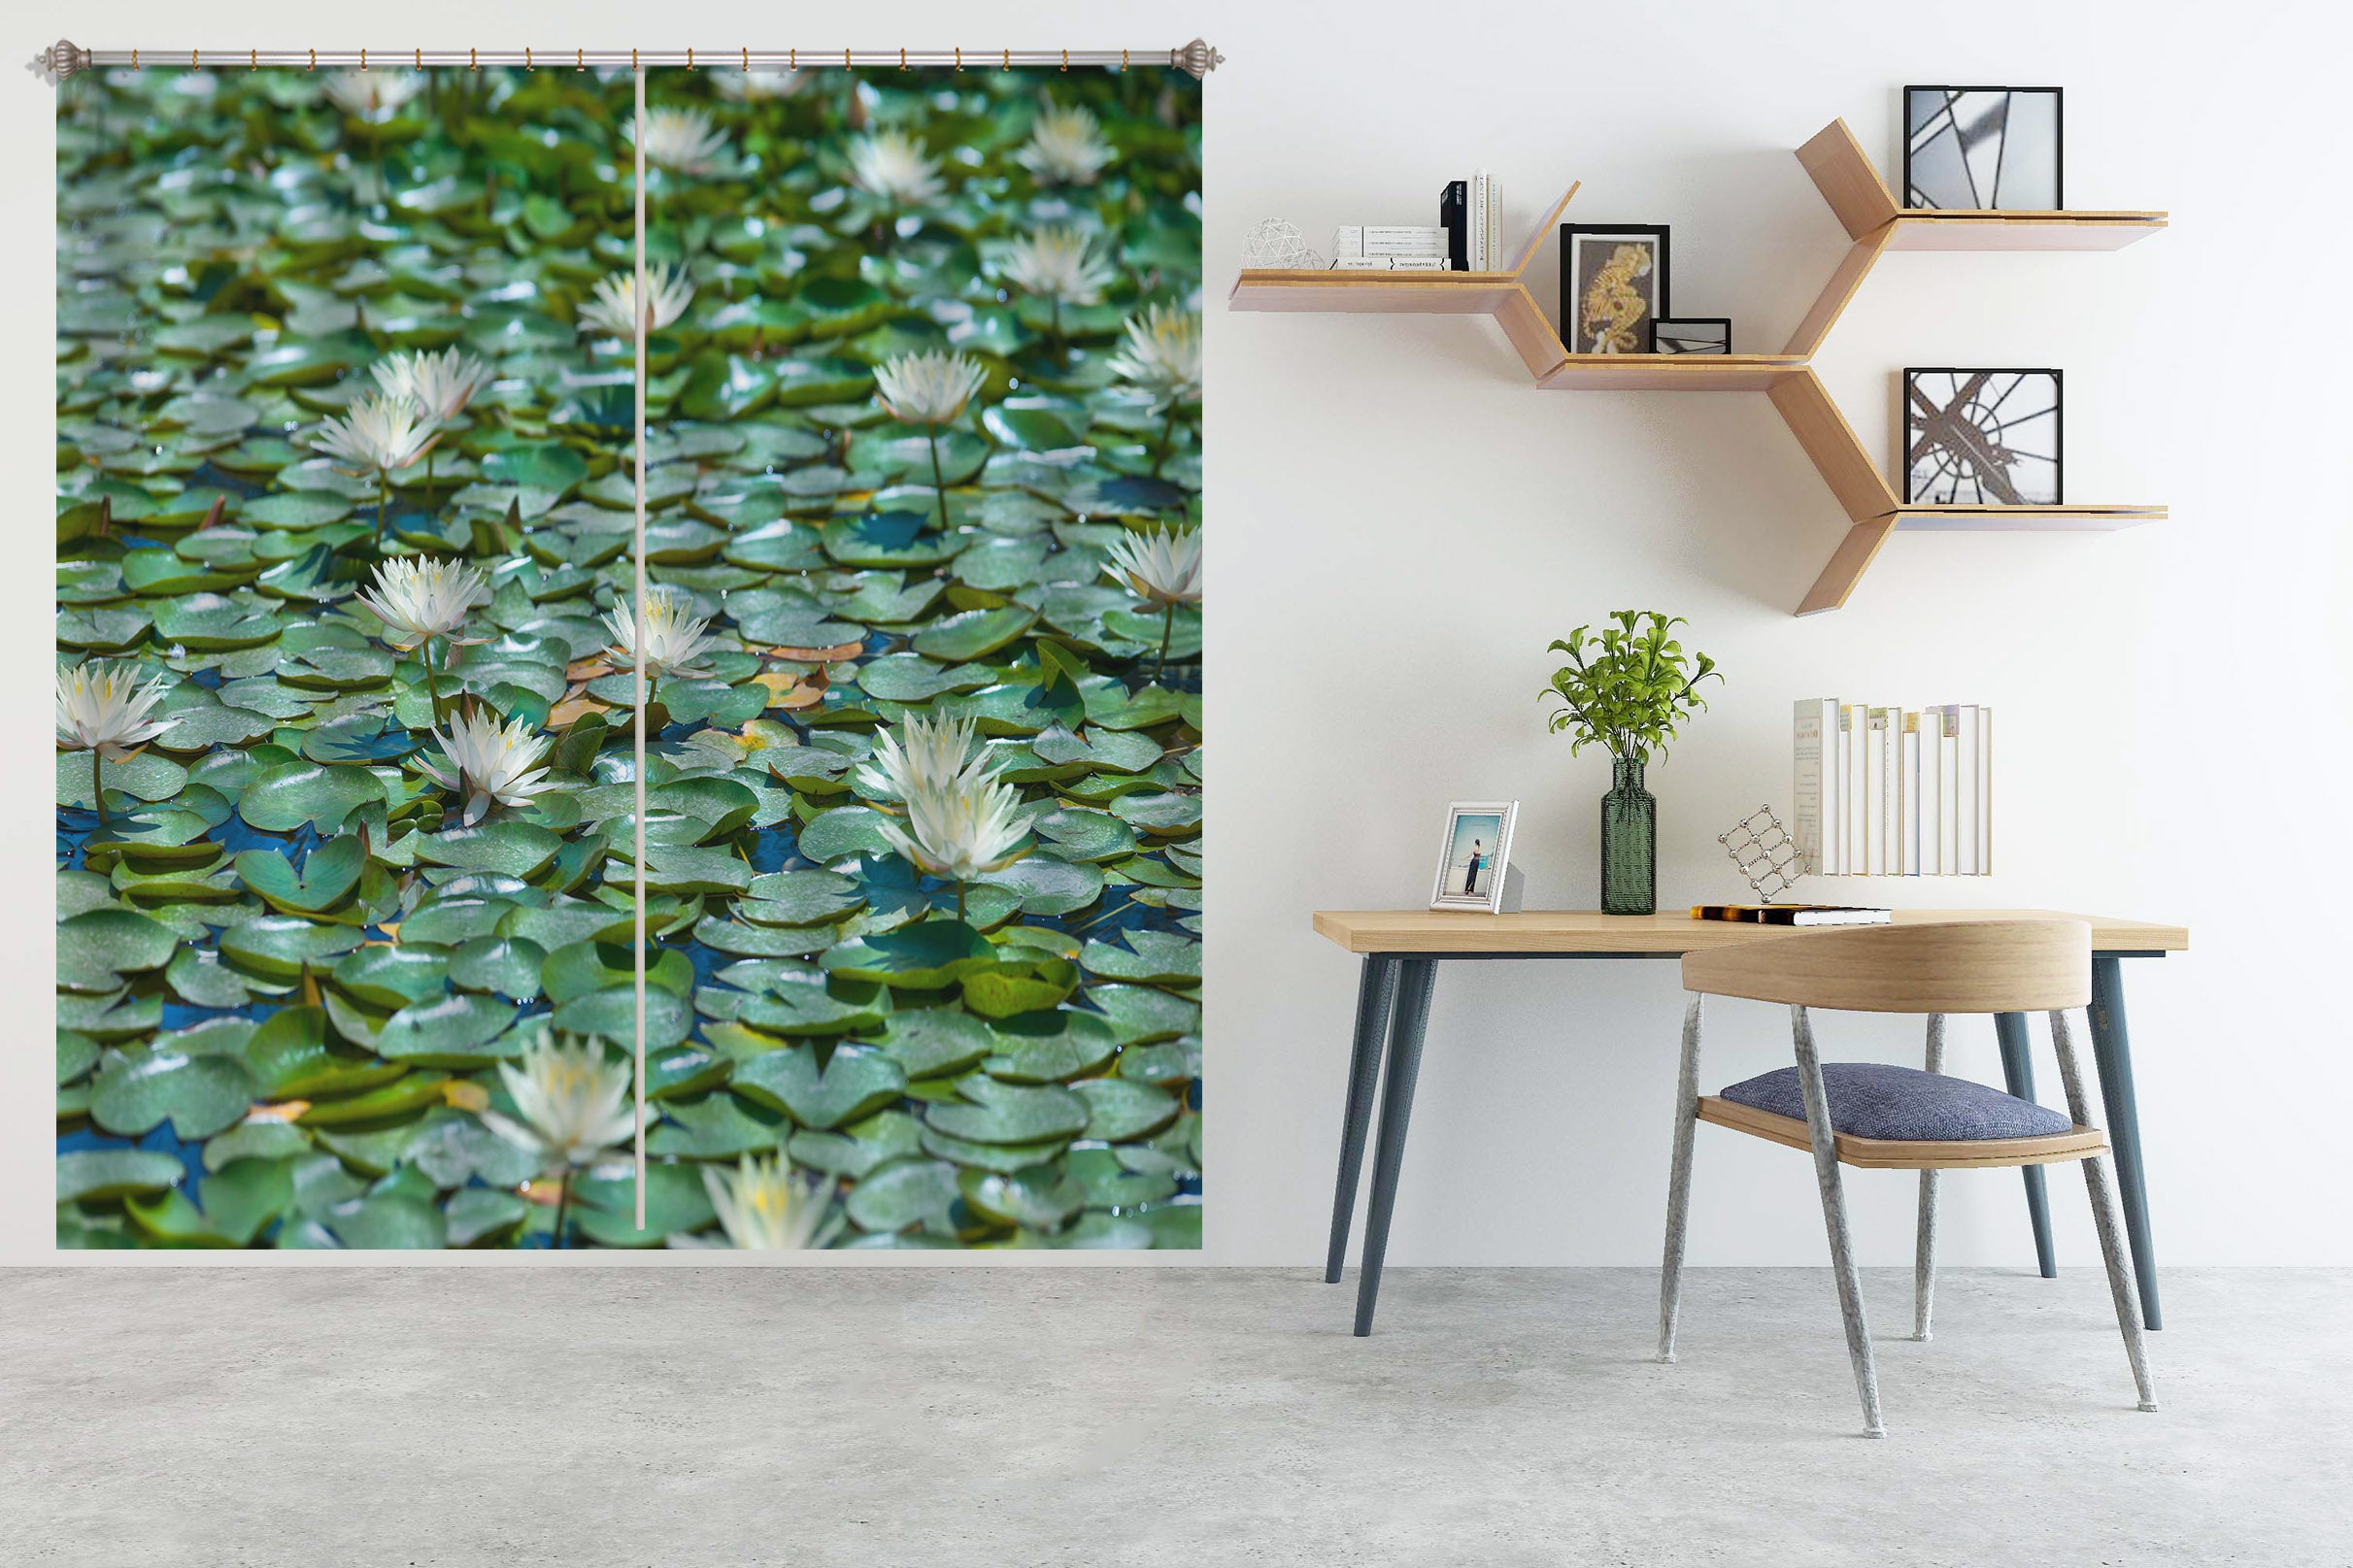 3D Lotus Pond 6310 Assaf Frank Curtain Curtains Drapes